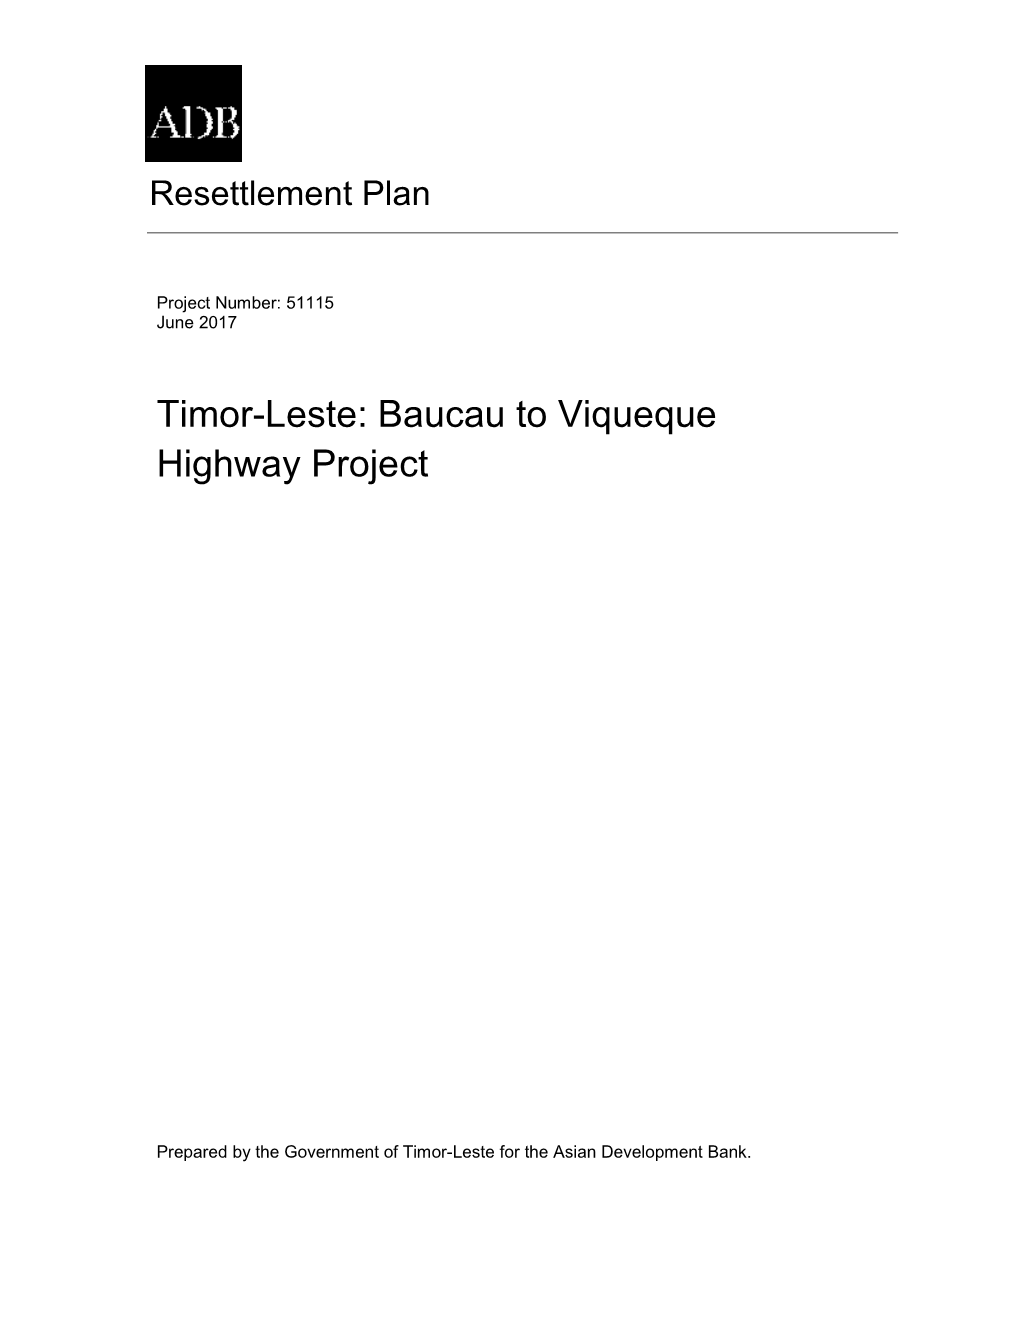 Timor-Leste: Baucau to Viqueque Highway Project